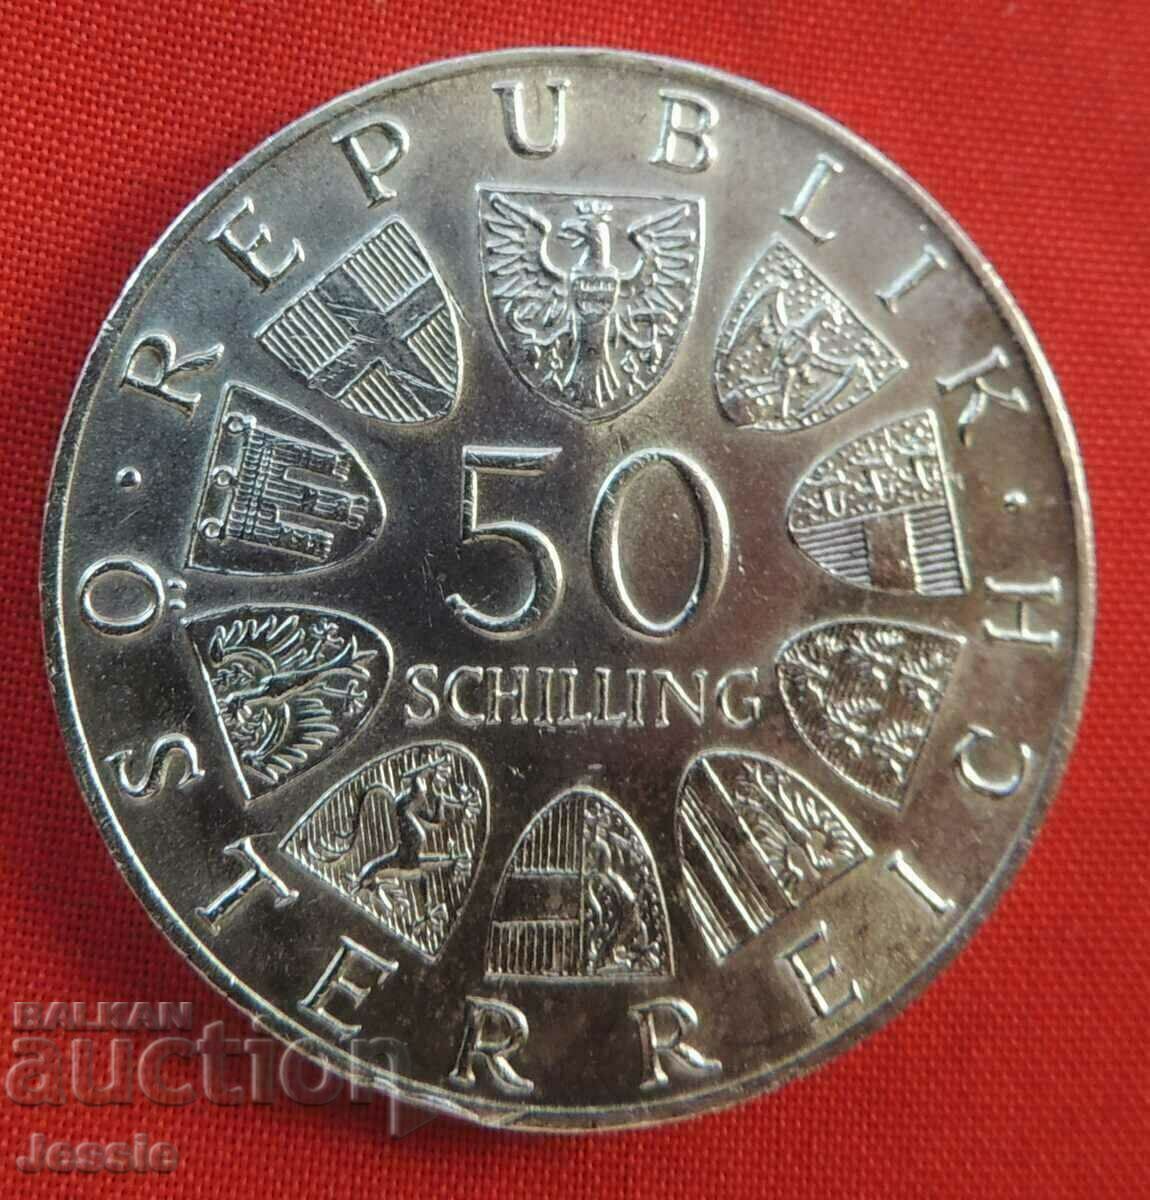 50 șilingi Austria argint 1968. CALITATE - PENTRU COLECȚIE